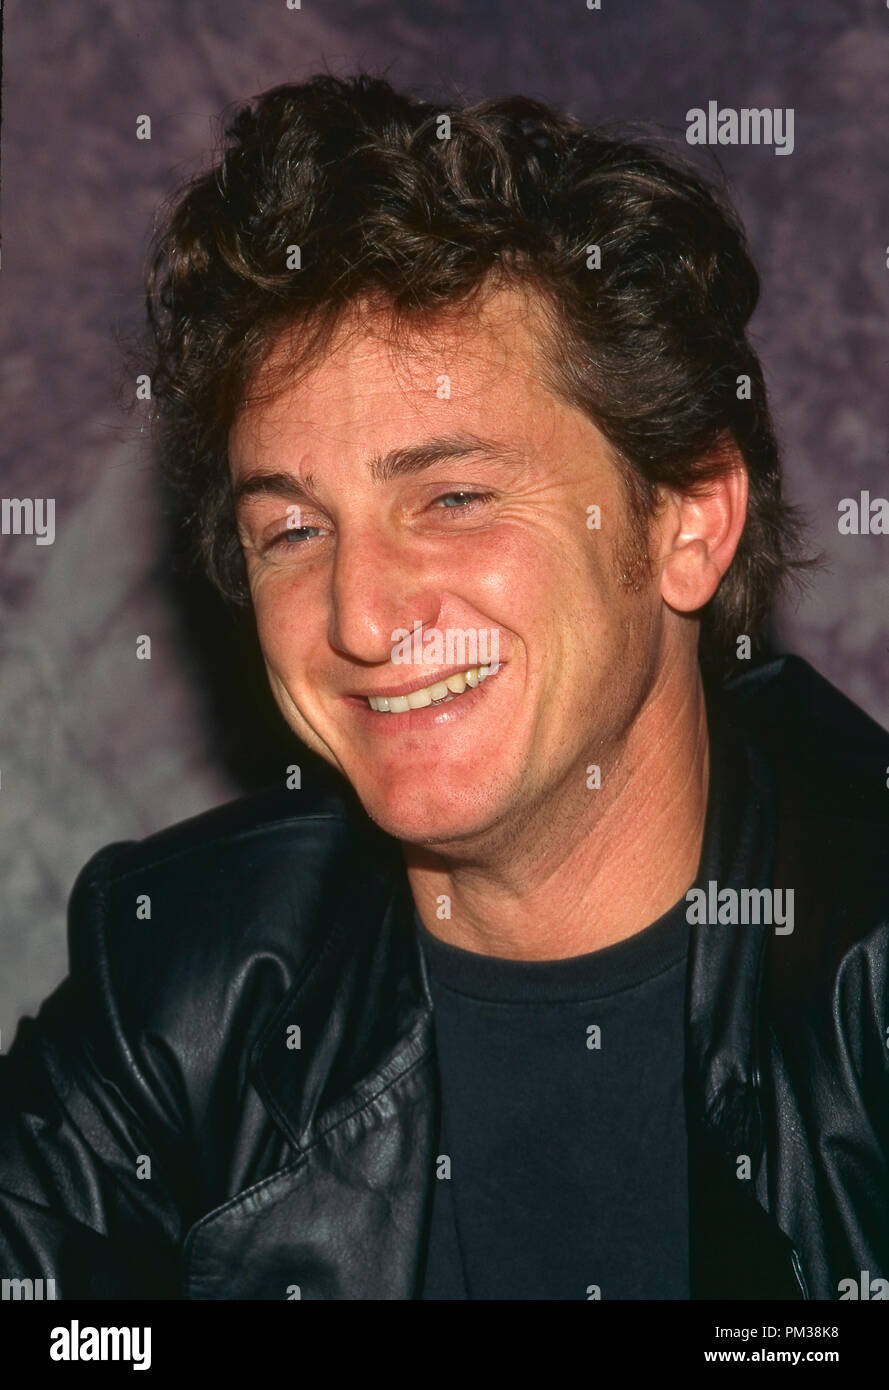 Sean Penn, circa 1992 File Reference # 1216 004JRC Stock Photo